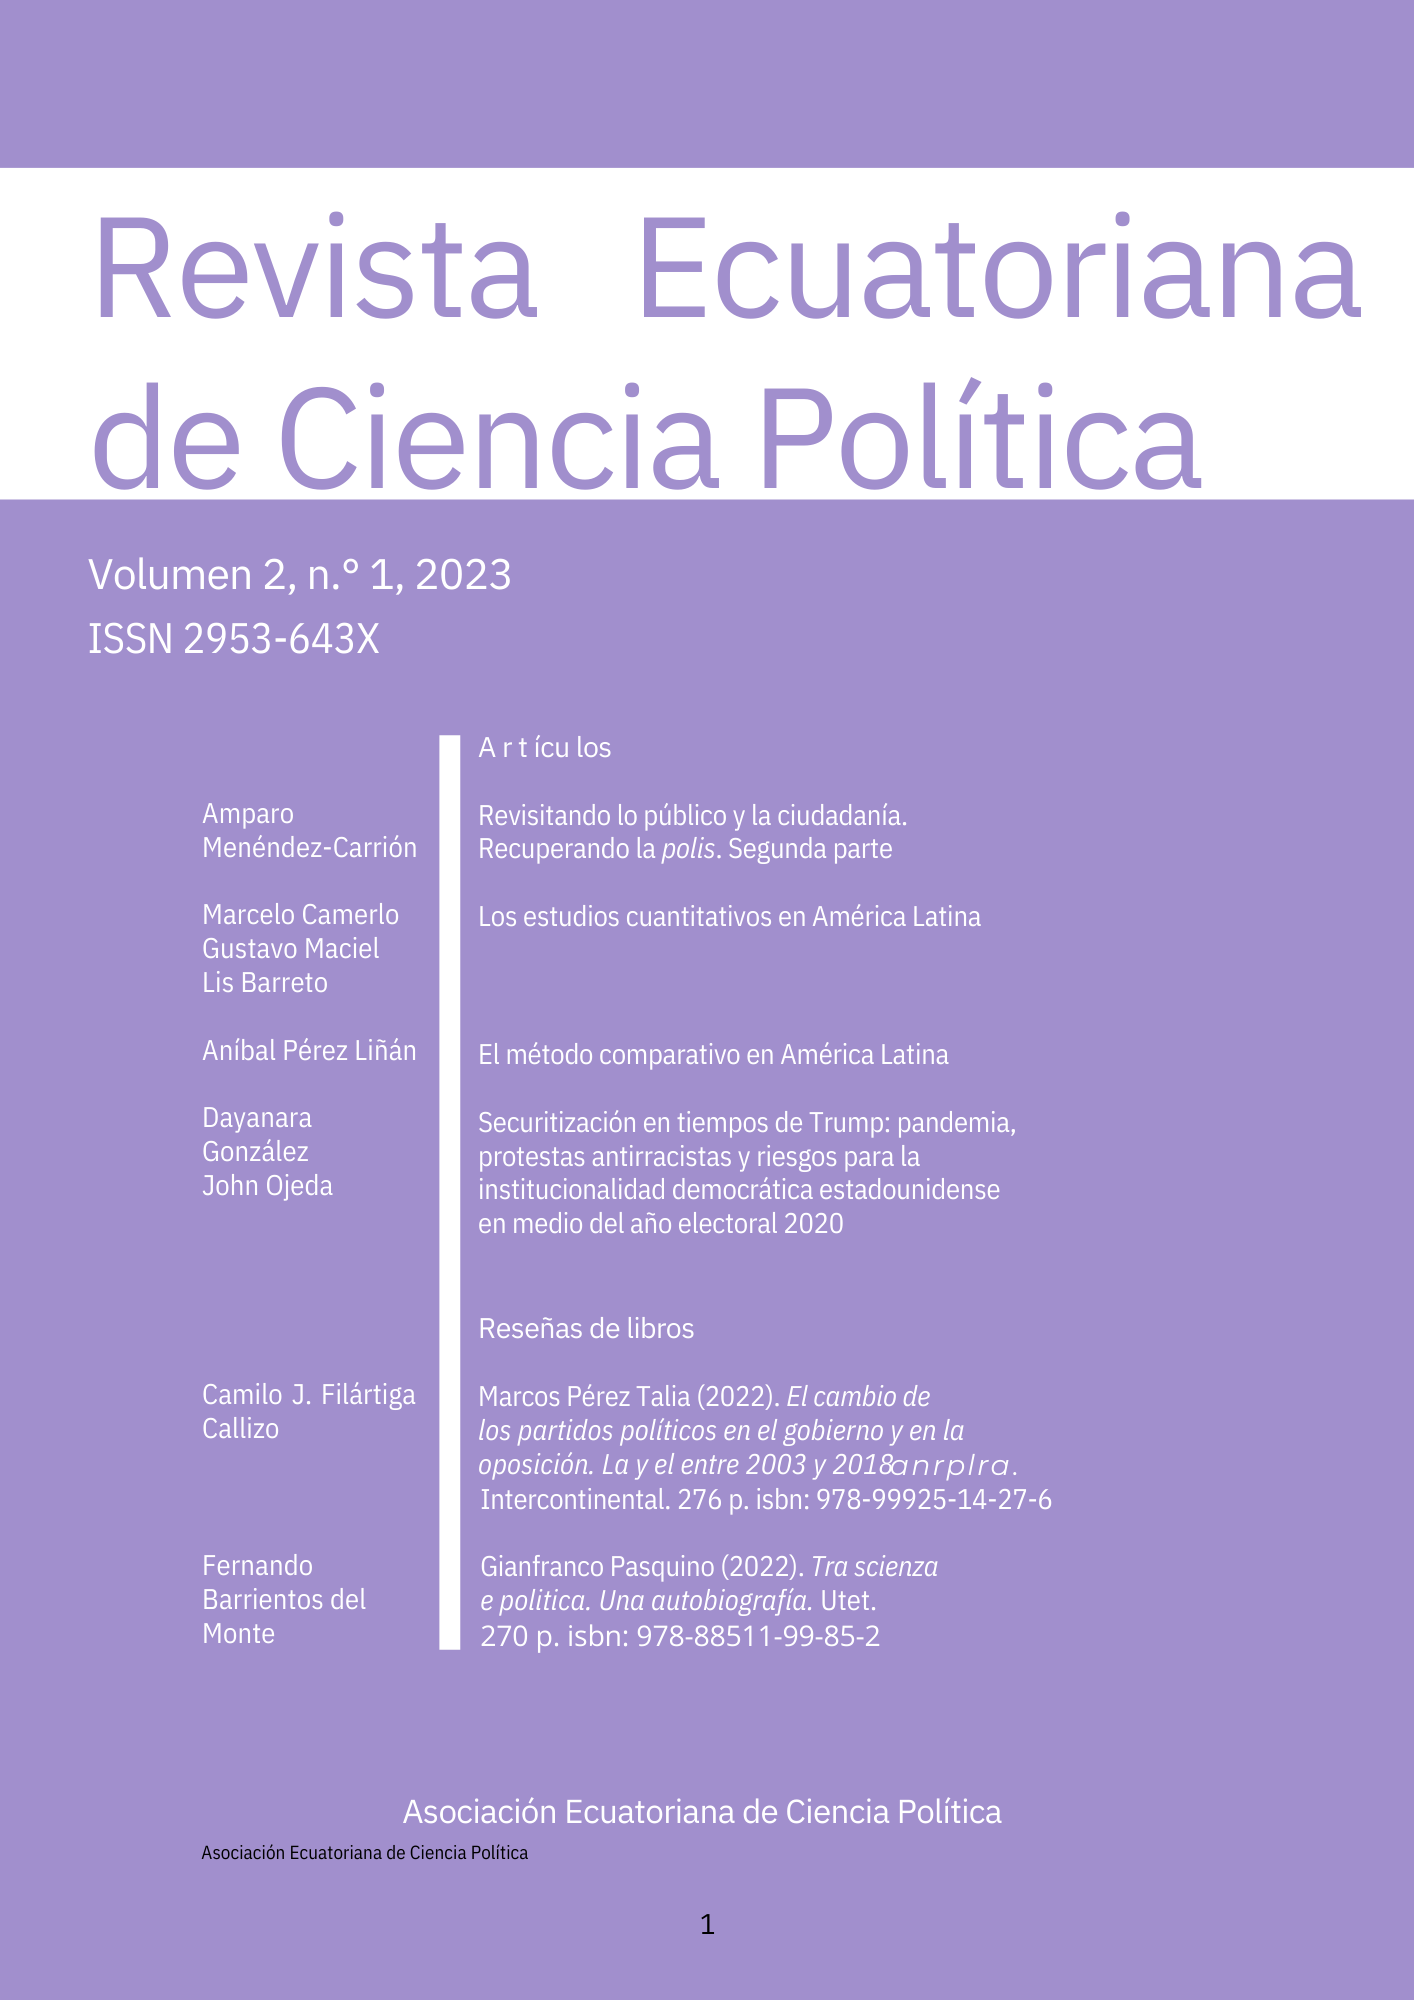 Marcos Pérez Talia (2022). . Intercontinental. 276 p. El cambio de los partidos políticos en el gobierno y en la oposición. La ANR y el PLRA entre 2003 y 2018 ISBN : 978-99925-14-27-6